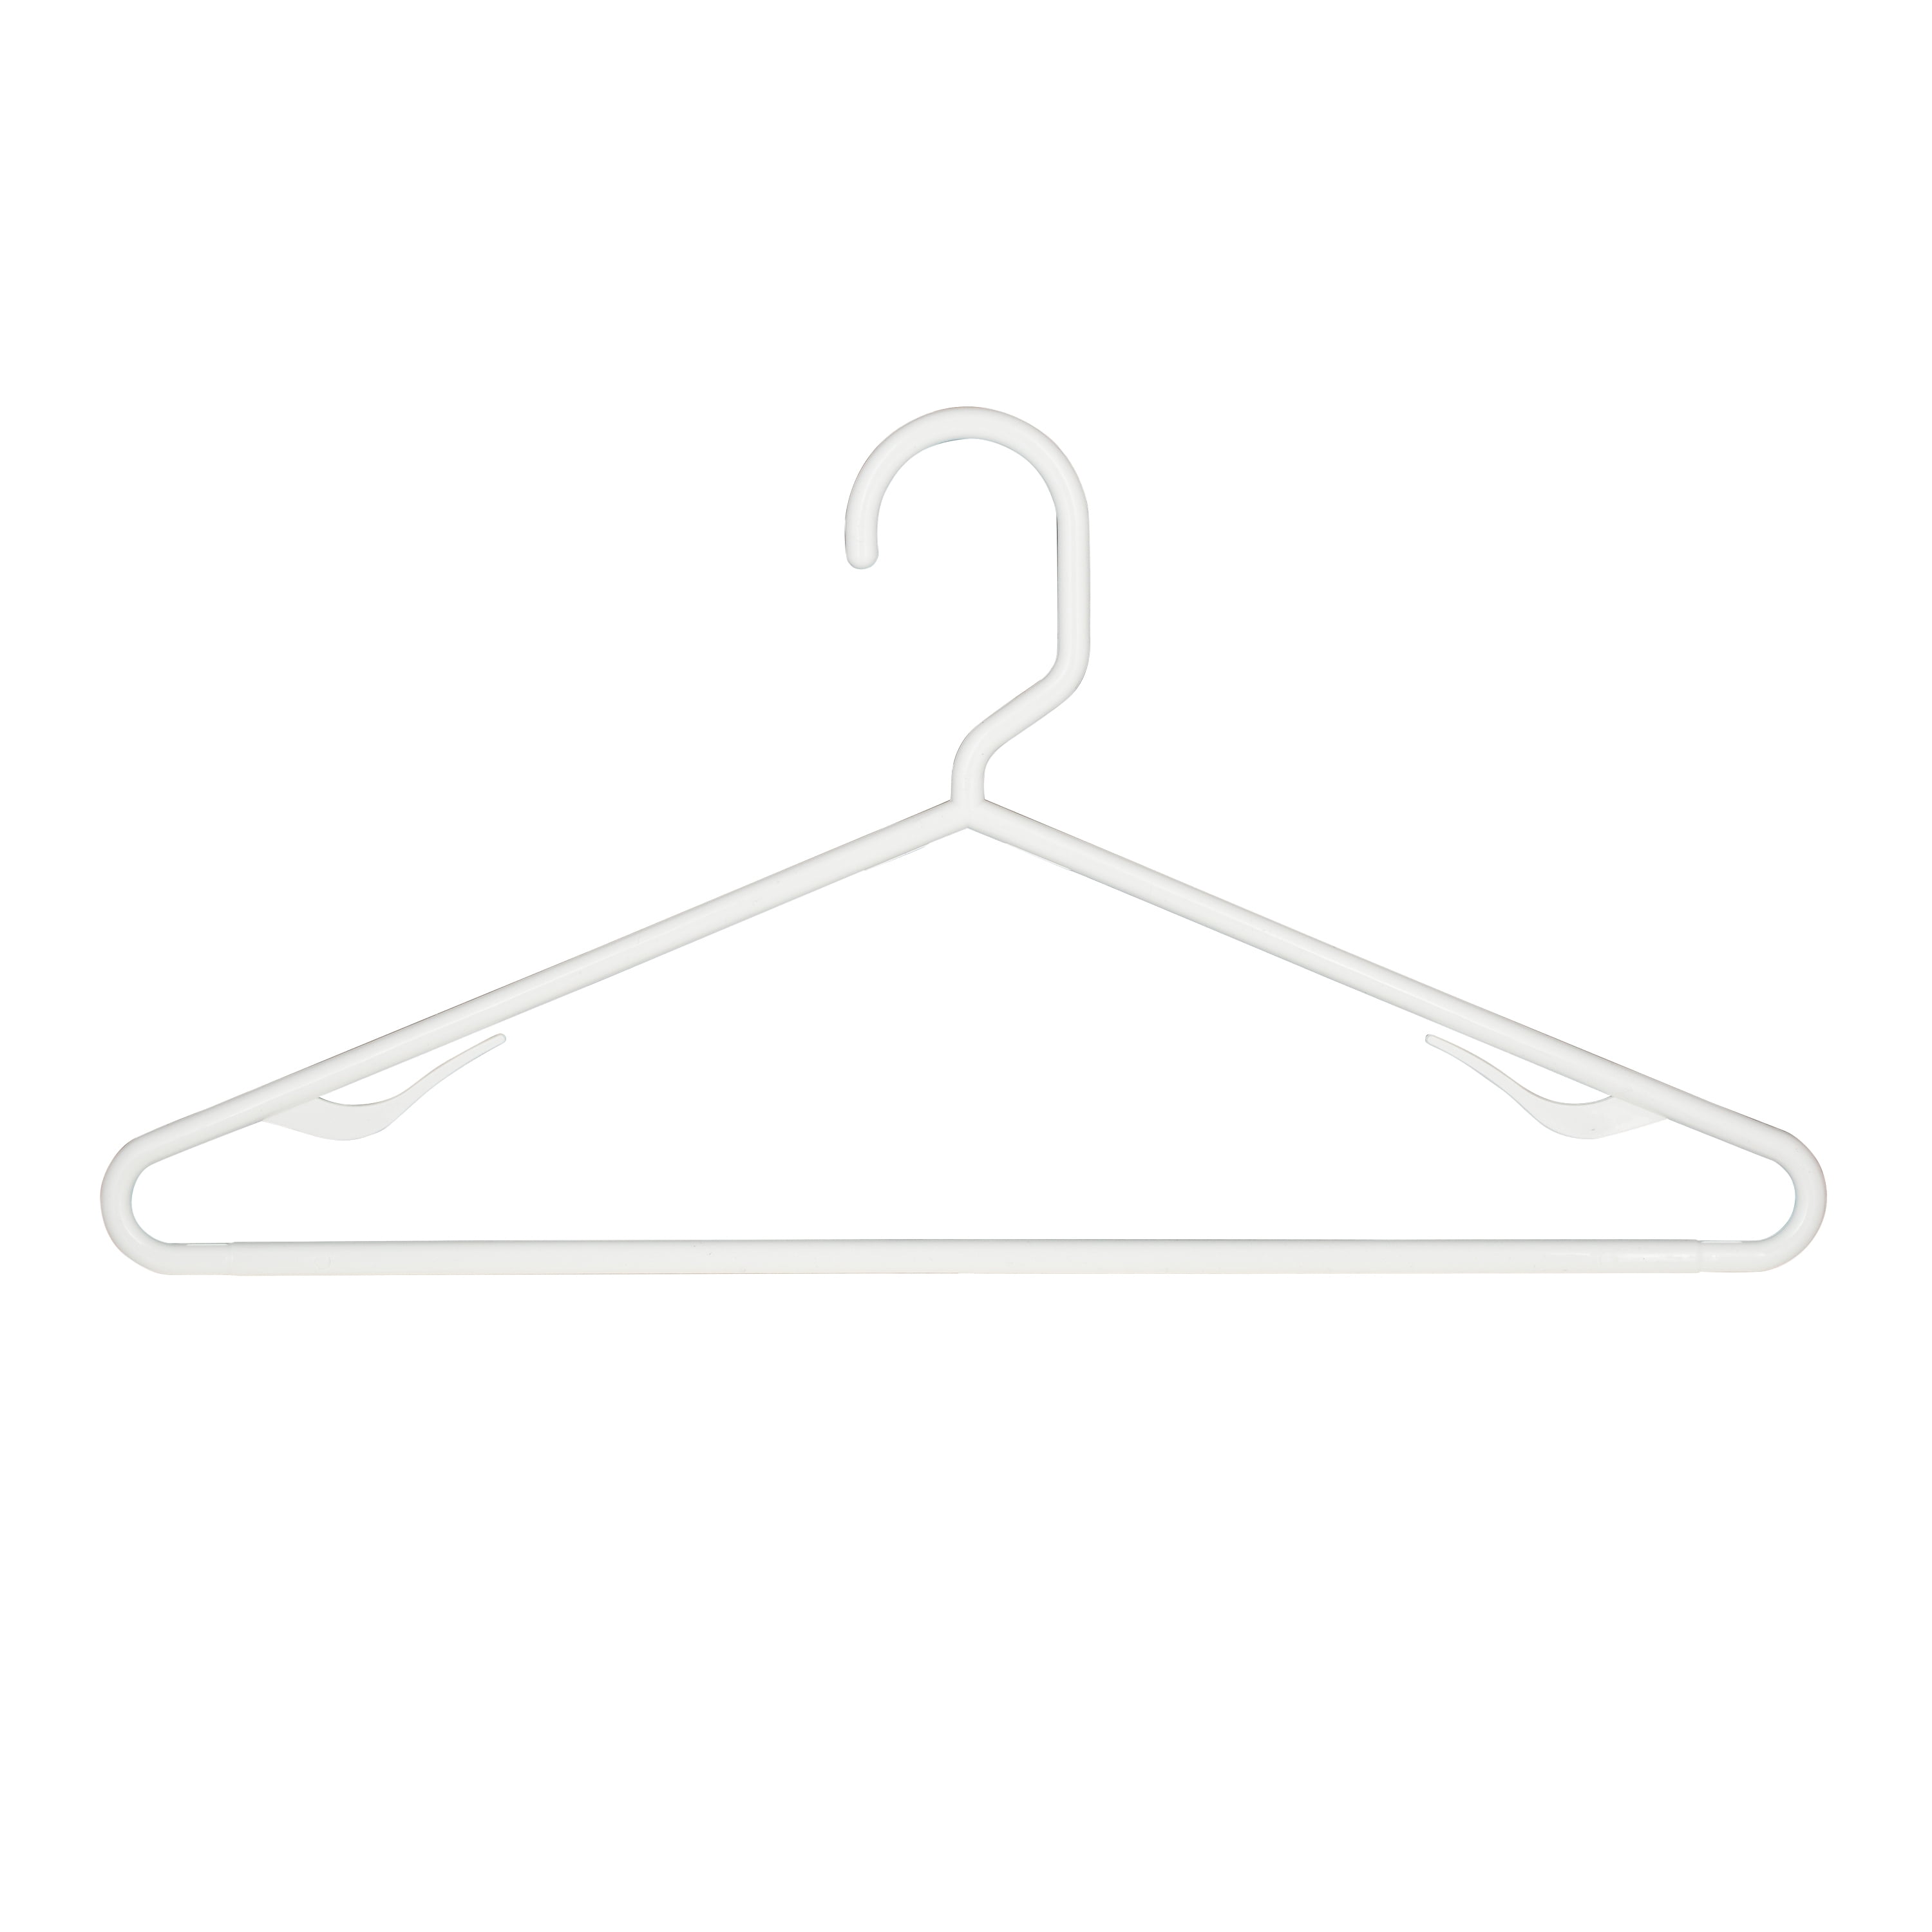 Woolite Plastic Clothes Hangers, 6 Count - Walmart.com